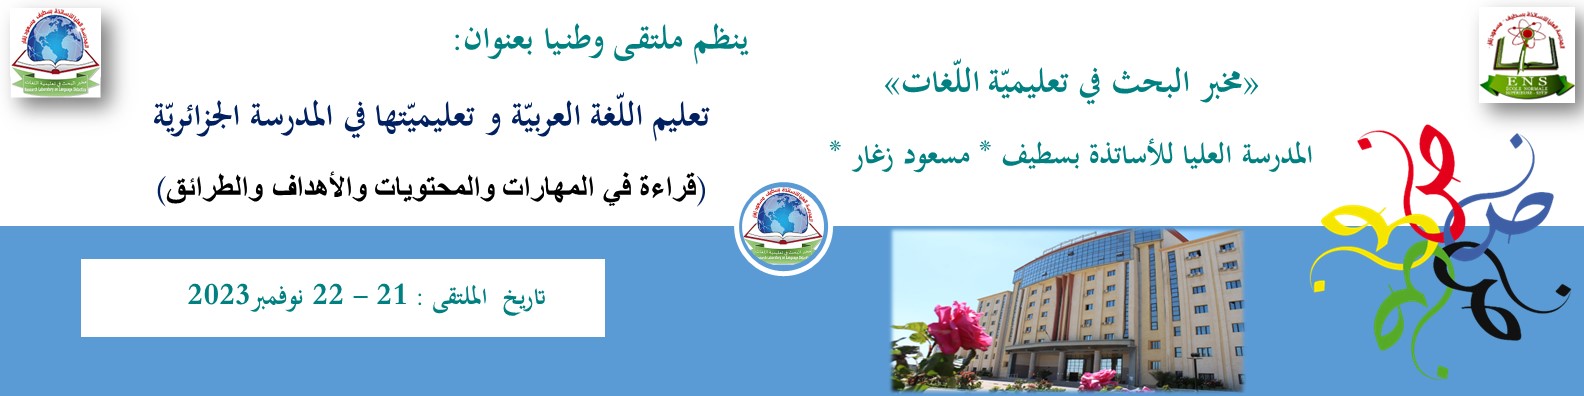 تعليم اللغة العربية وتعليميتها في المدرسة الجزائرية